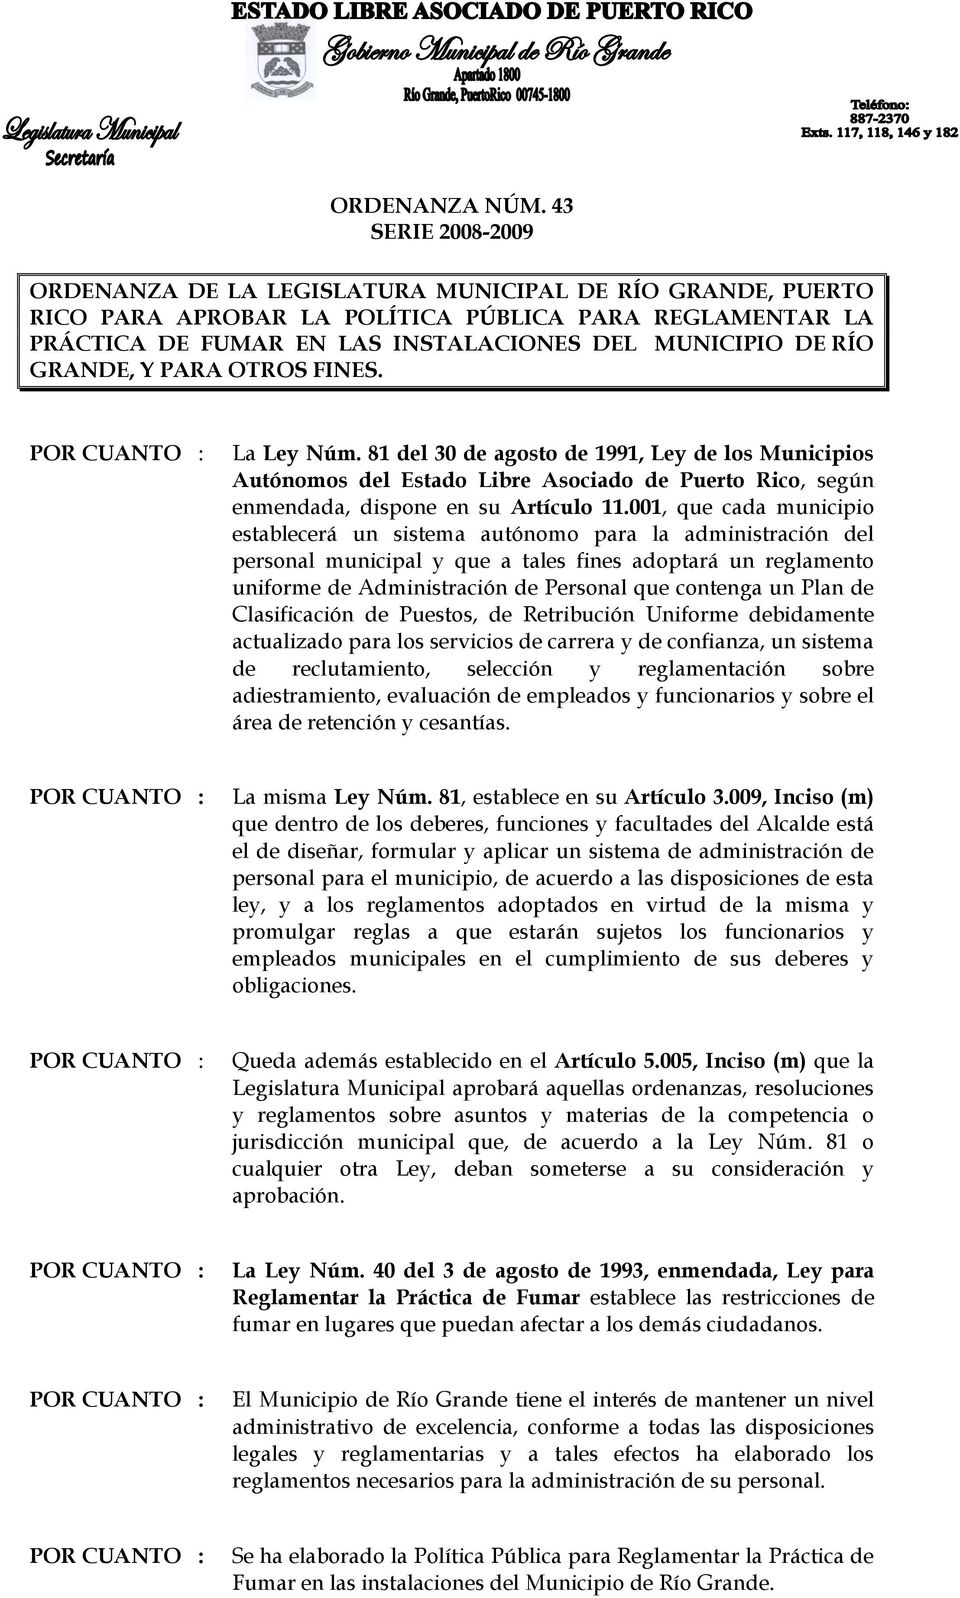 GRANDE, Y PARA OTROS FINES. La Ley Núm. 81 del 30 de agosto de 1991, Ley de los Municipios Autónomos del Estado Libre Asociado de Puerto Rico, según enmendada, dispone en su Artículo 11.